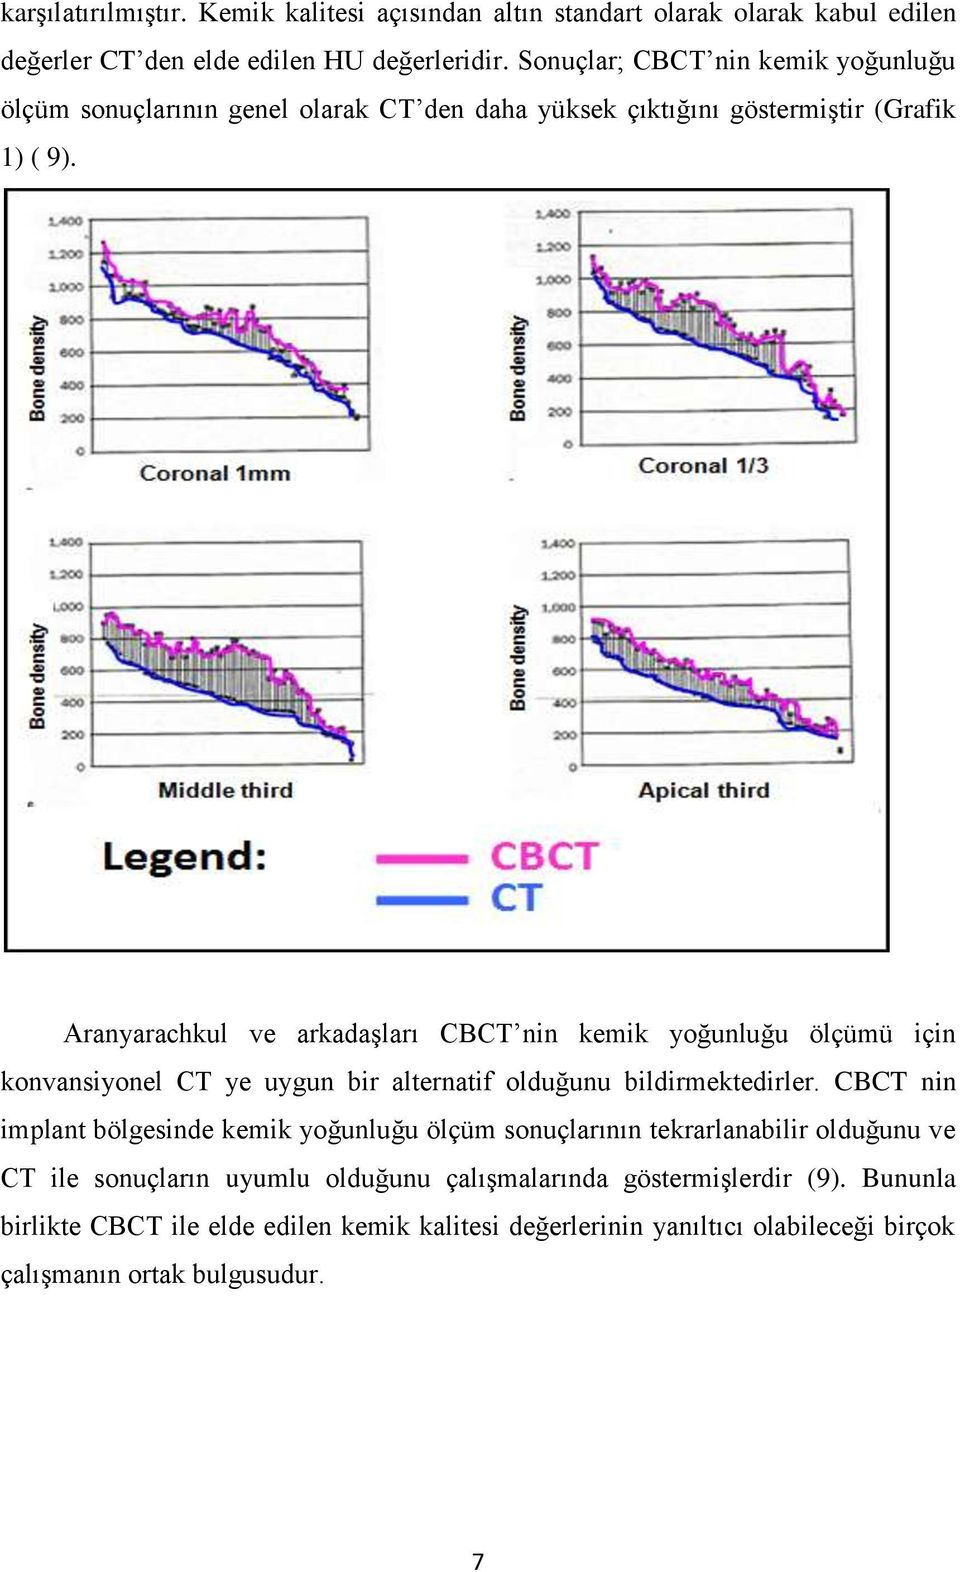 Aranyarachkul ve arkadaşları CBCT nin kemik yoğunluğu ölçümü için konvansiyonel CT ye uygun bir alternatif olduğunu bildirmektedirler.